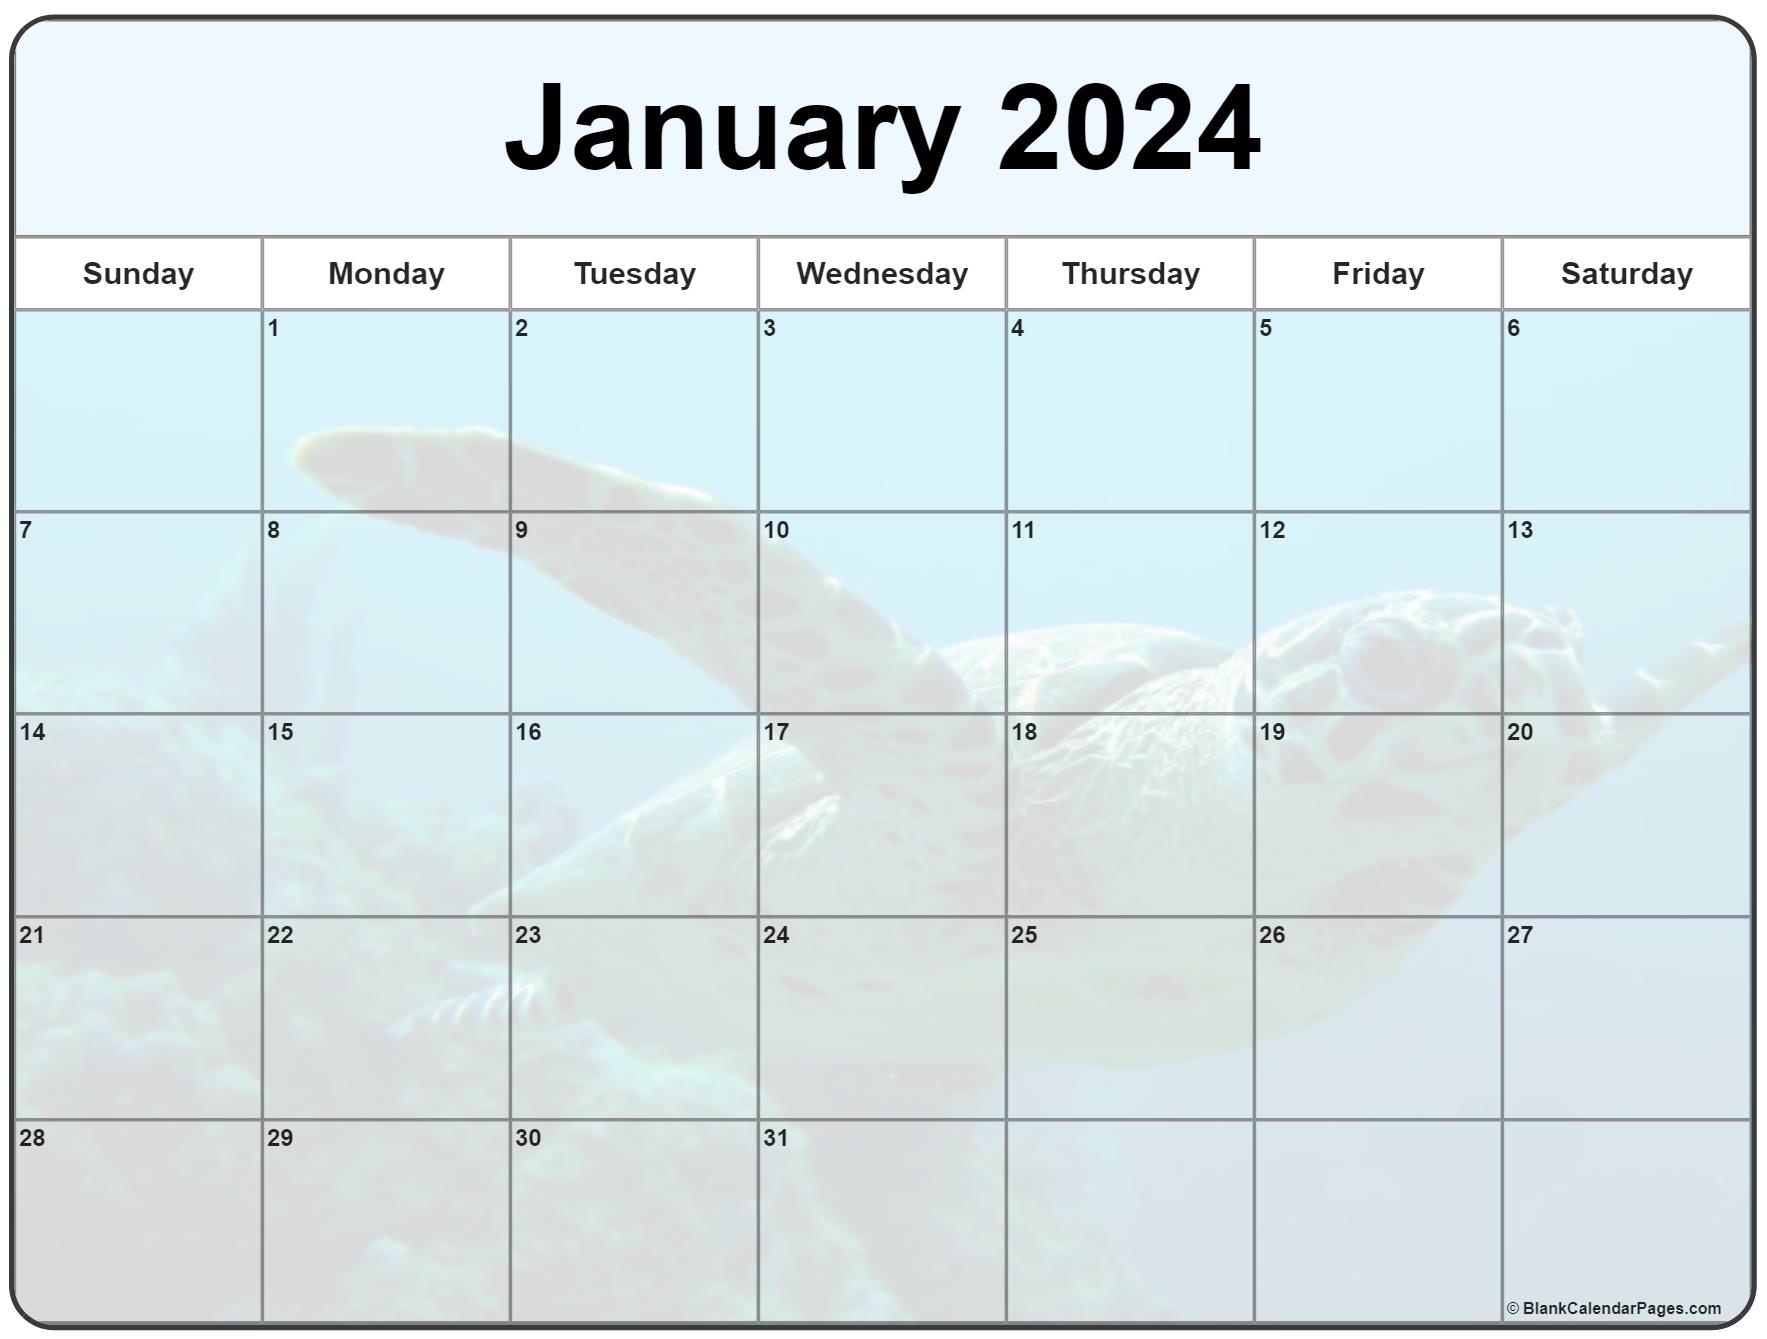 January 2024 Calendar Events Cool The Best List of School Calendar